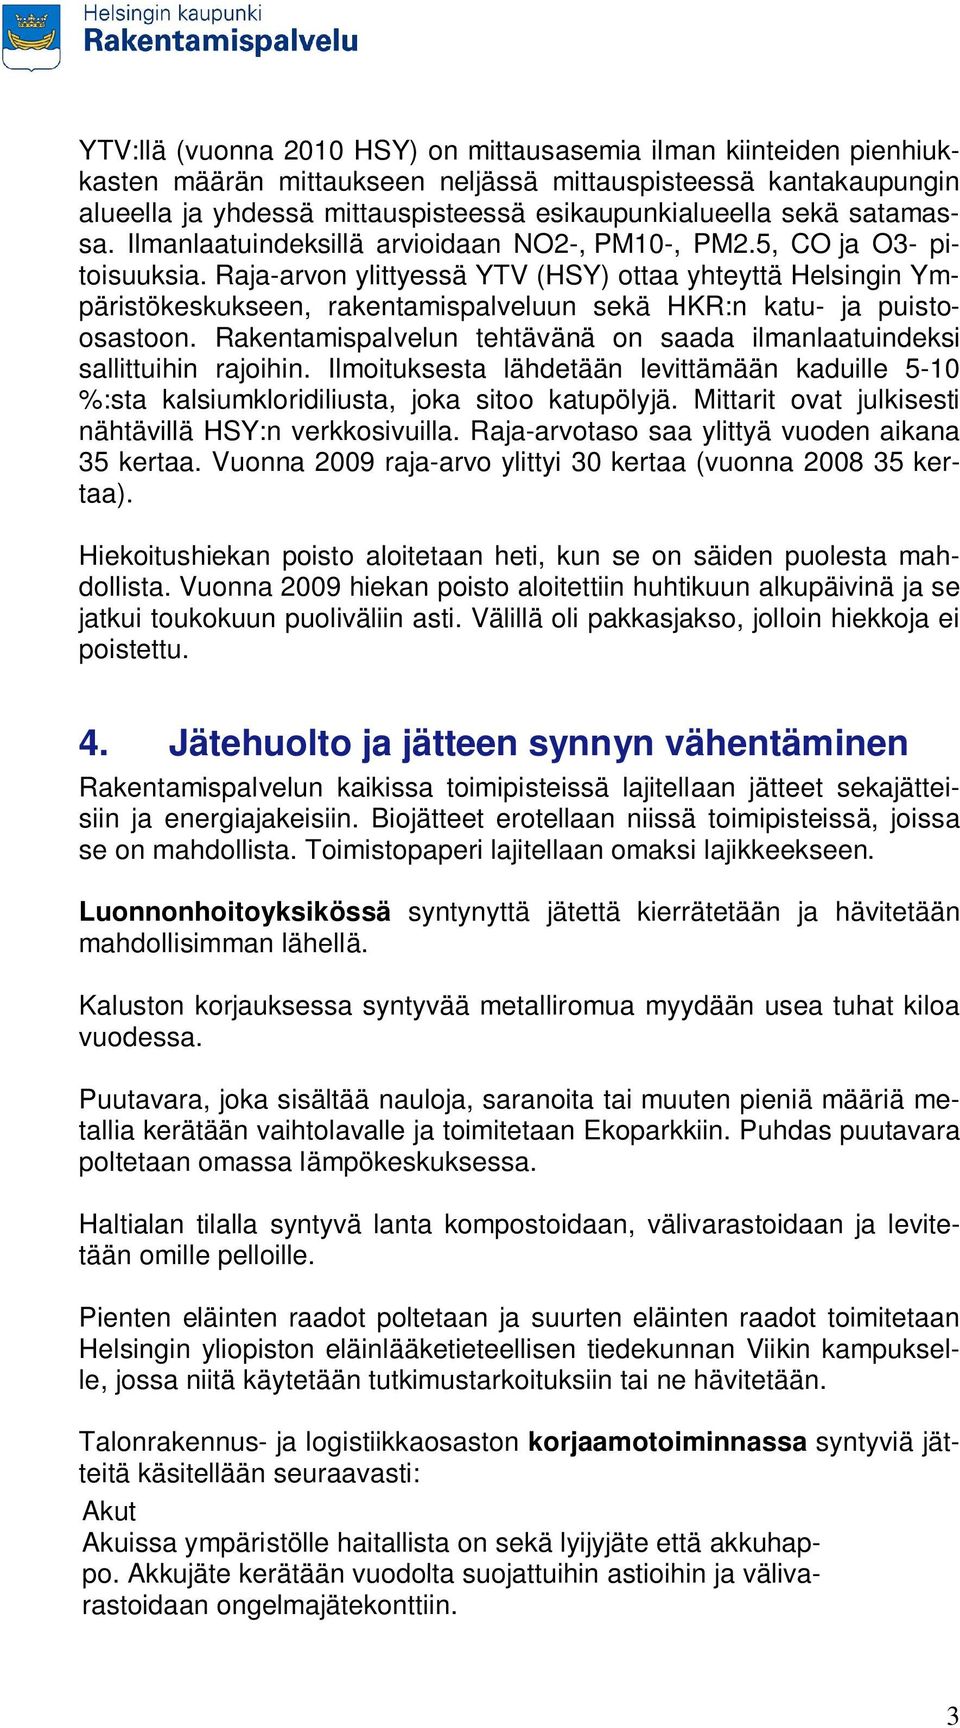 Raja-arvon ylittyessä YTV (HSY) ottaa yhteyttä Helsingin Ympäristökeskukseen, rakentamispalveluun sekä HKR:n katu- ja puistoosastoon.